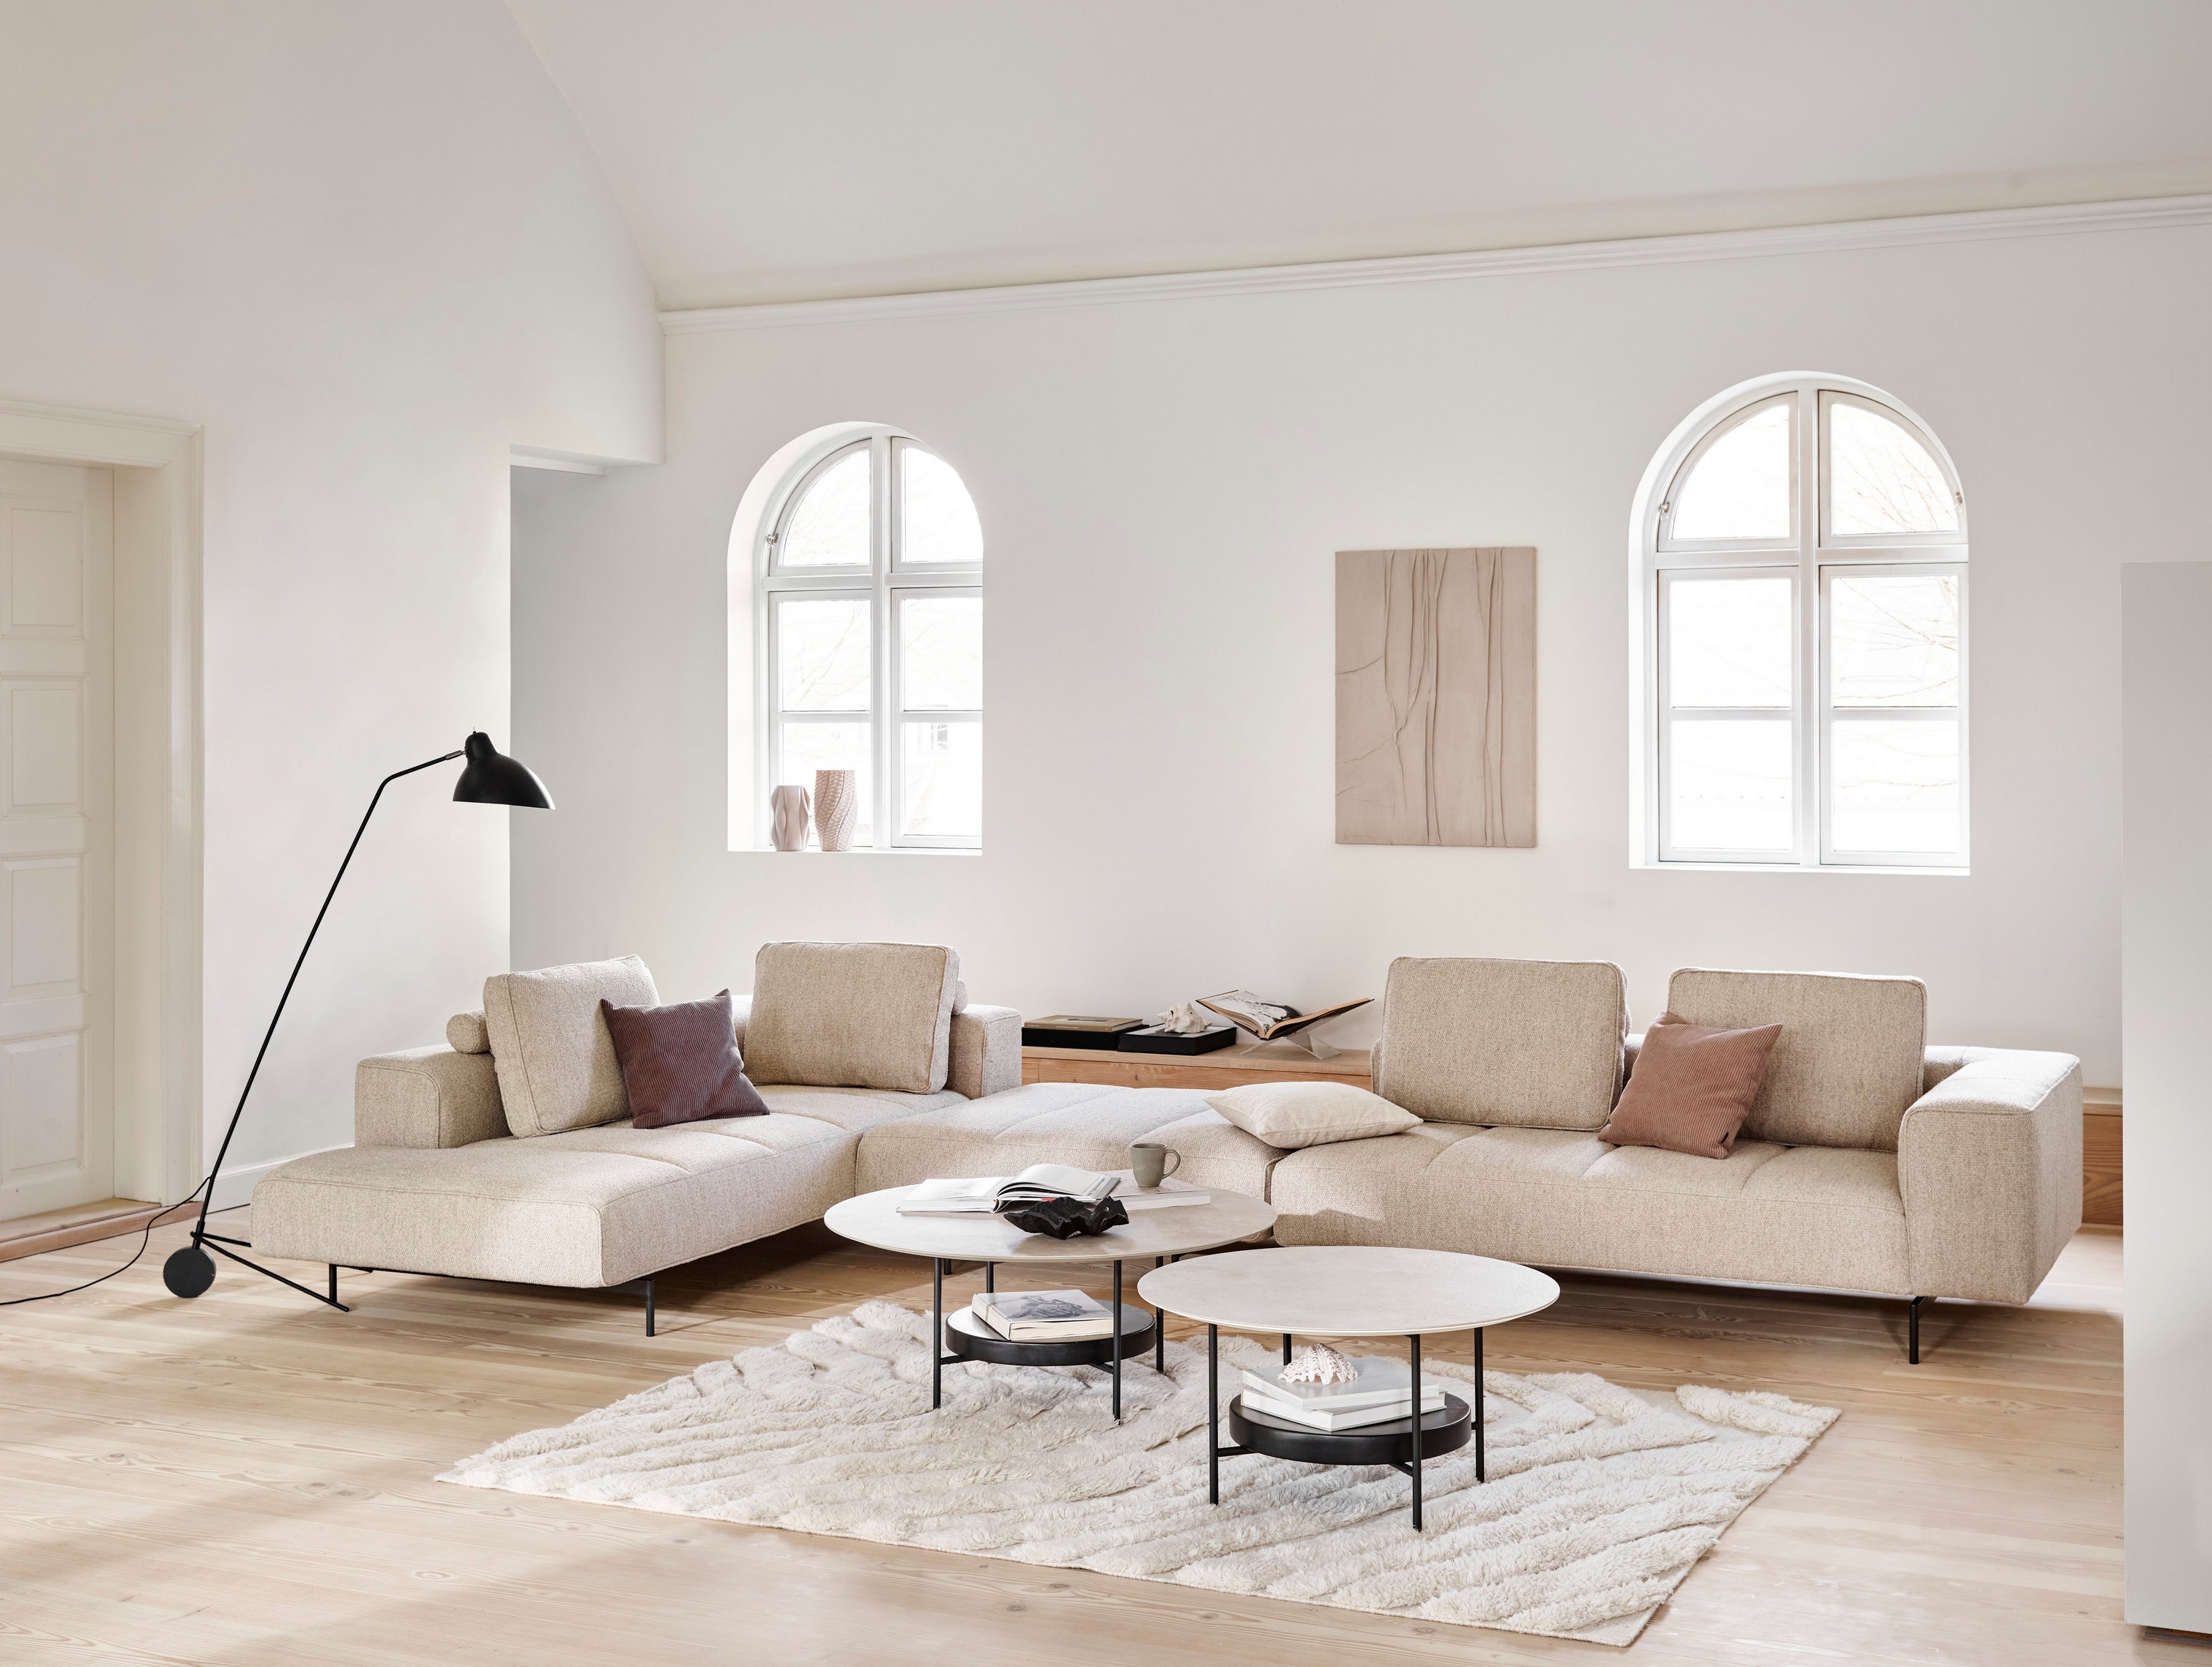 Amsterdam モジュール式ソファ、Madrid コーヒーテーブル、フロアランプを配置した、アーチ型の窓を持つミニマルなリビングルーム。